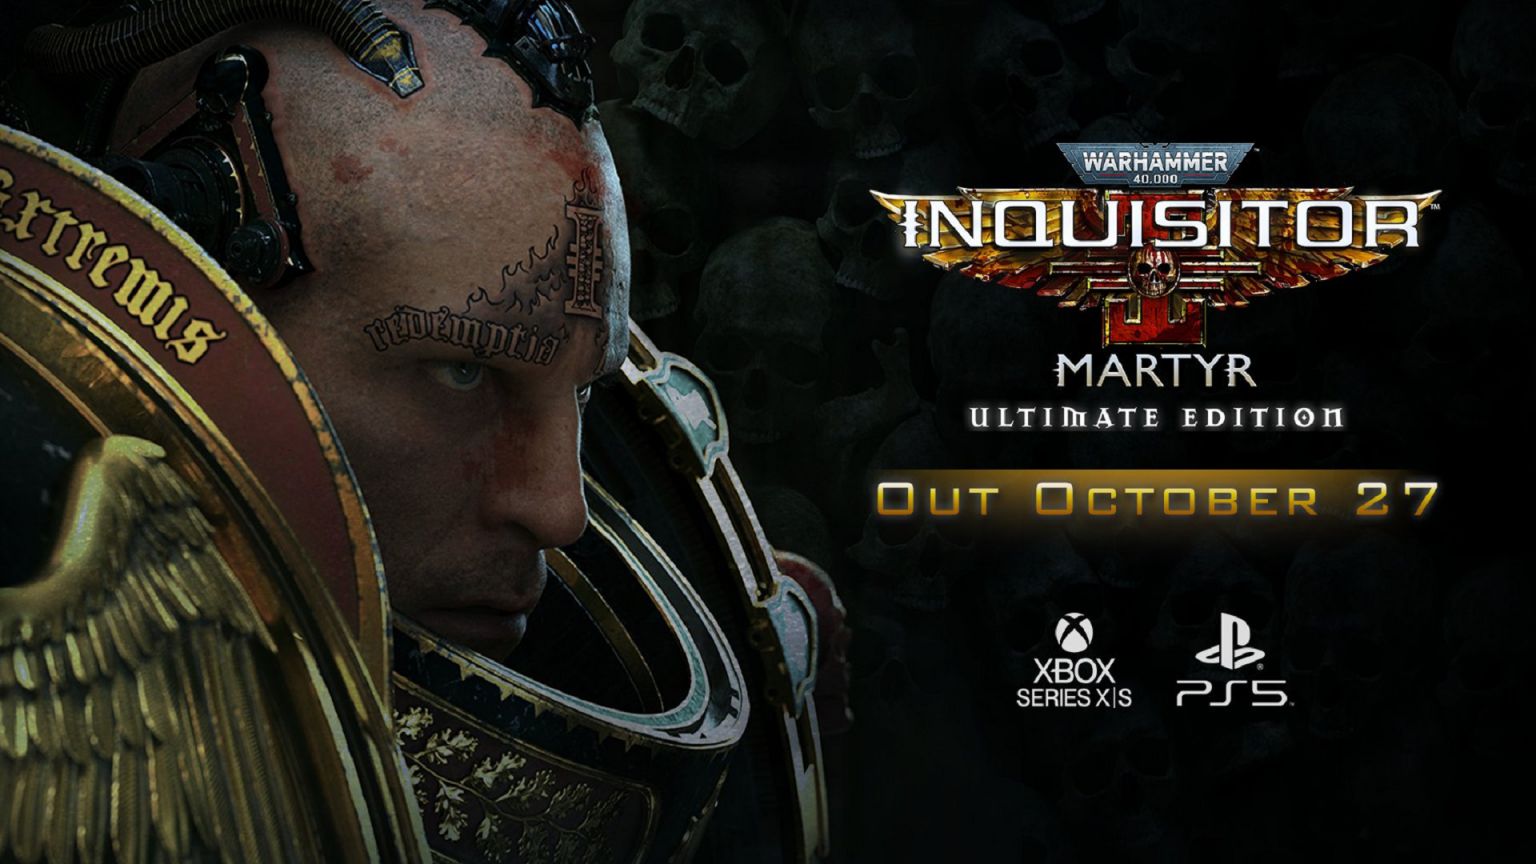 Warhammer 40000 Inquisitor - Martyr